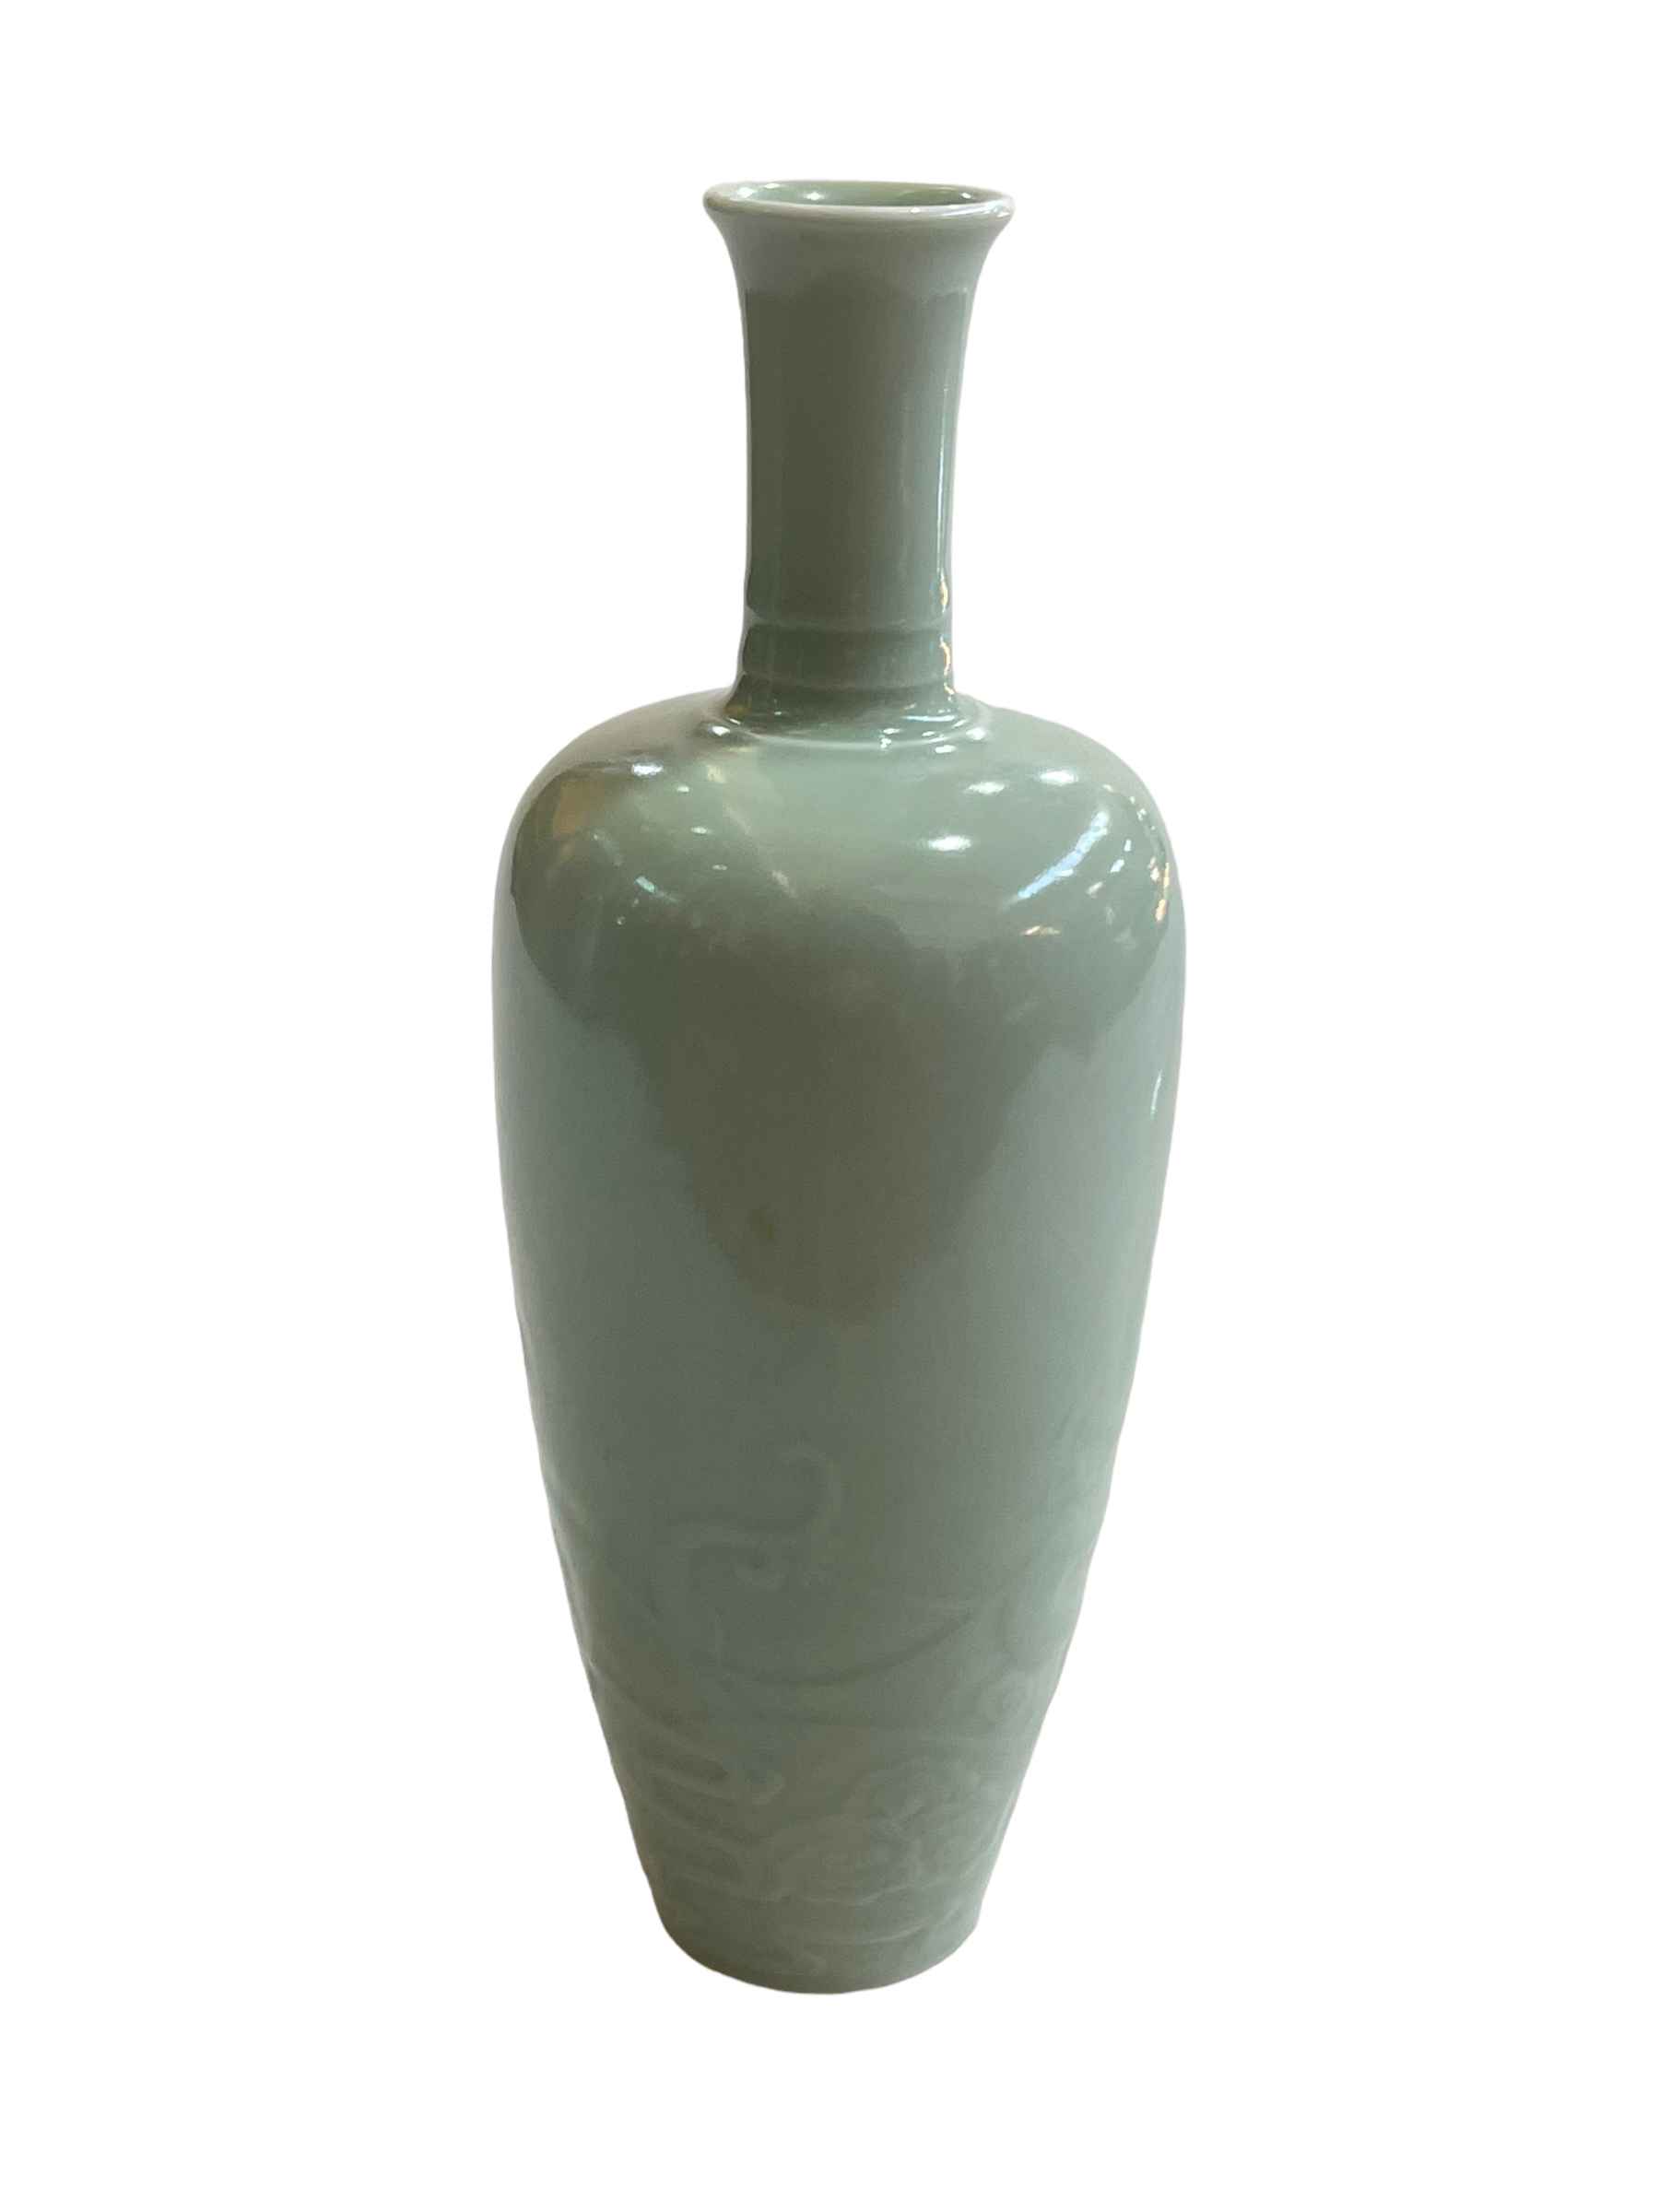 Chinese Celadon china vase with raised dragon decoration, six character Kangxi mark to base, 21cm.